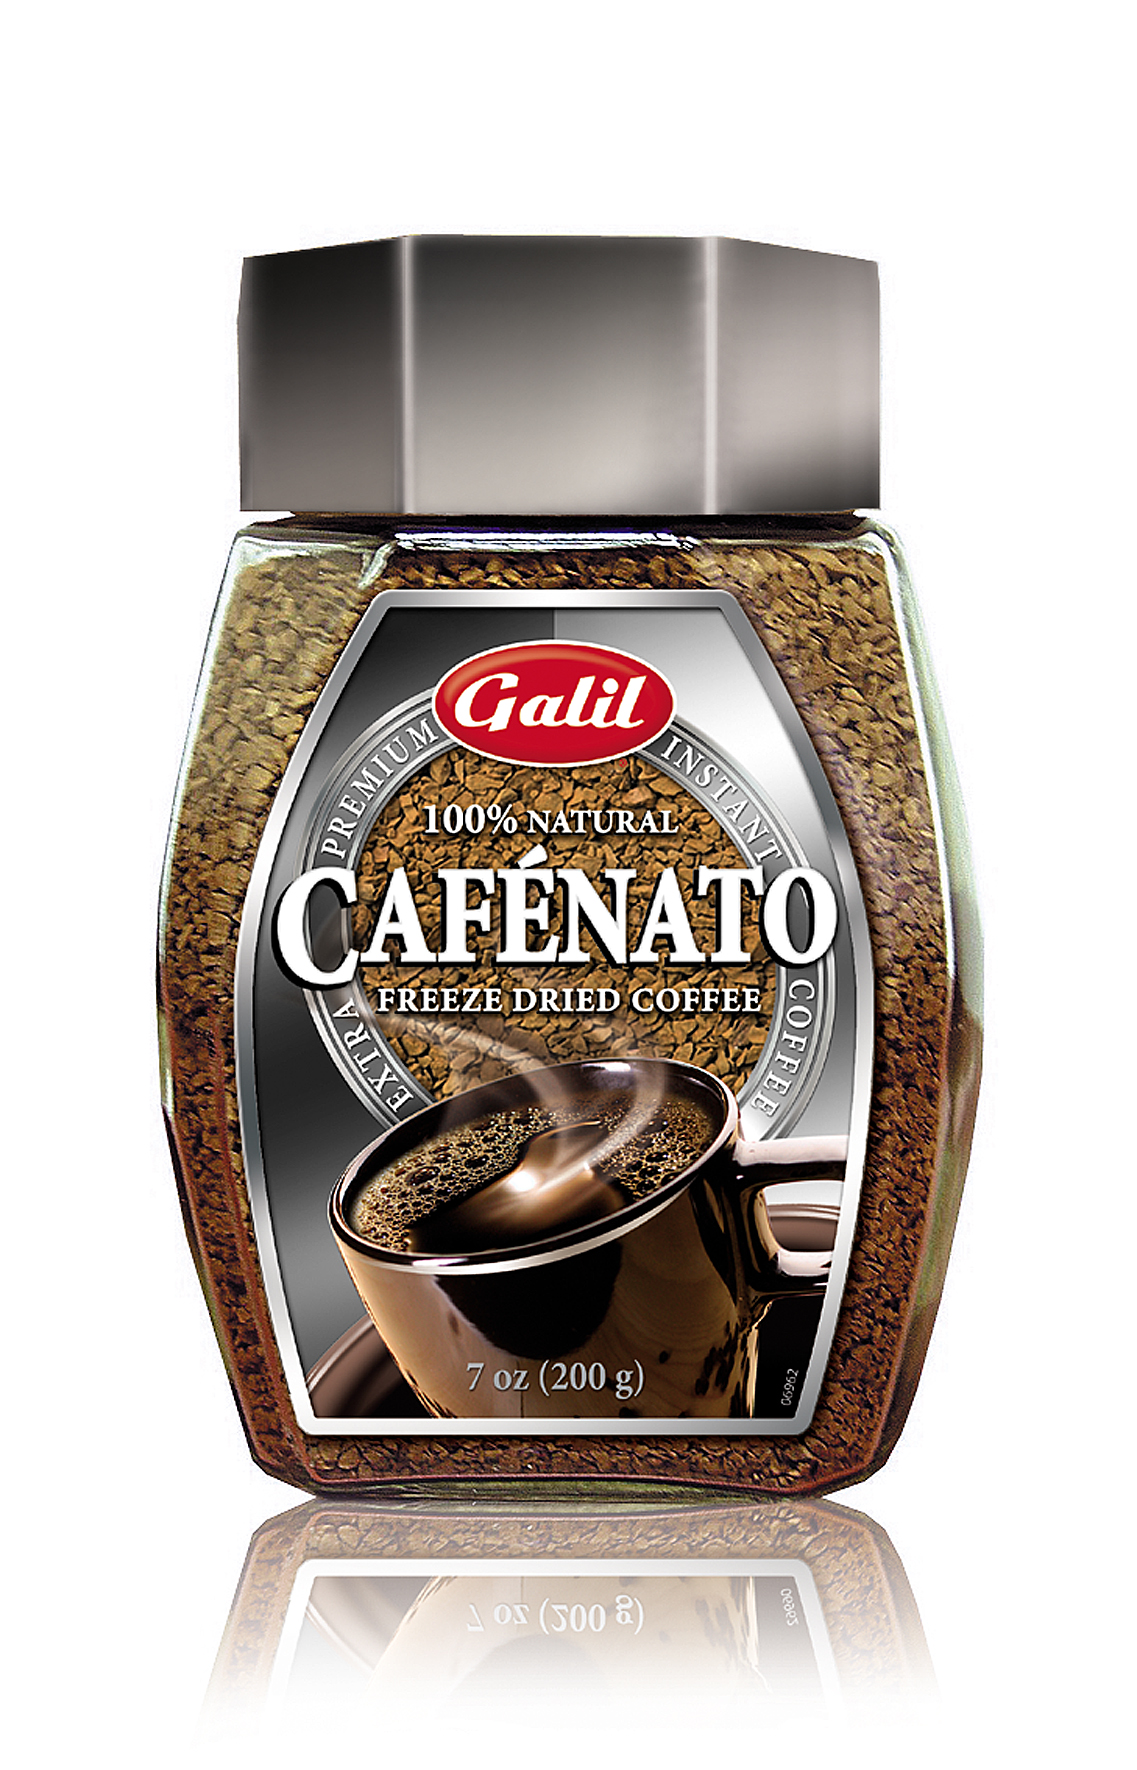 GALIL CAFENATO FREEZE DRIED COFFEE